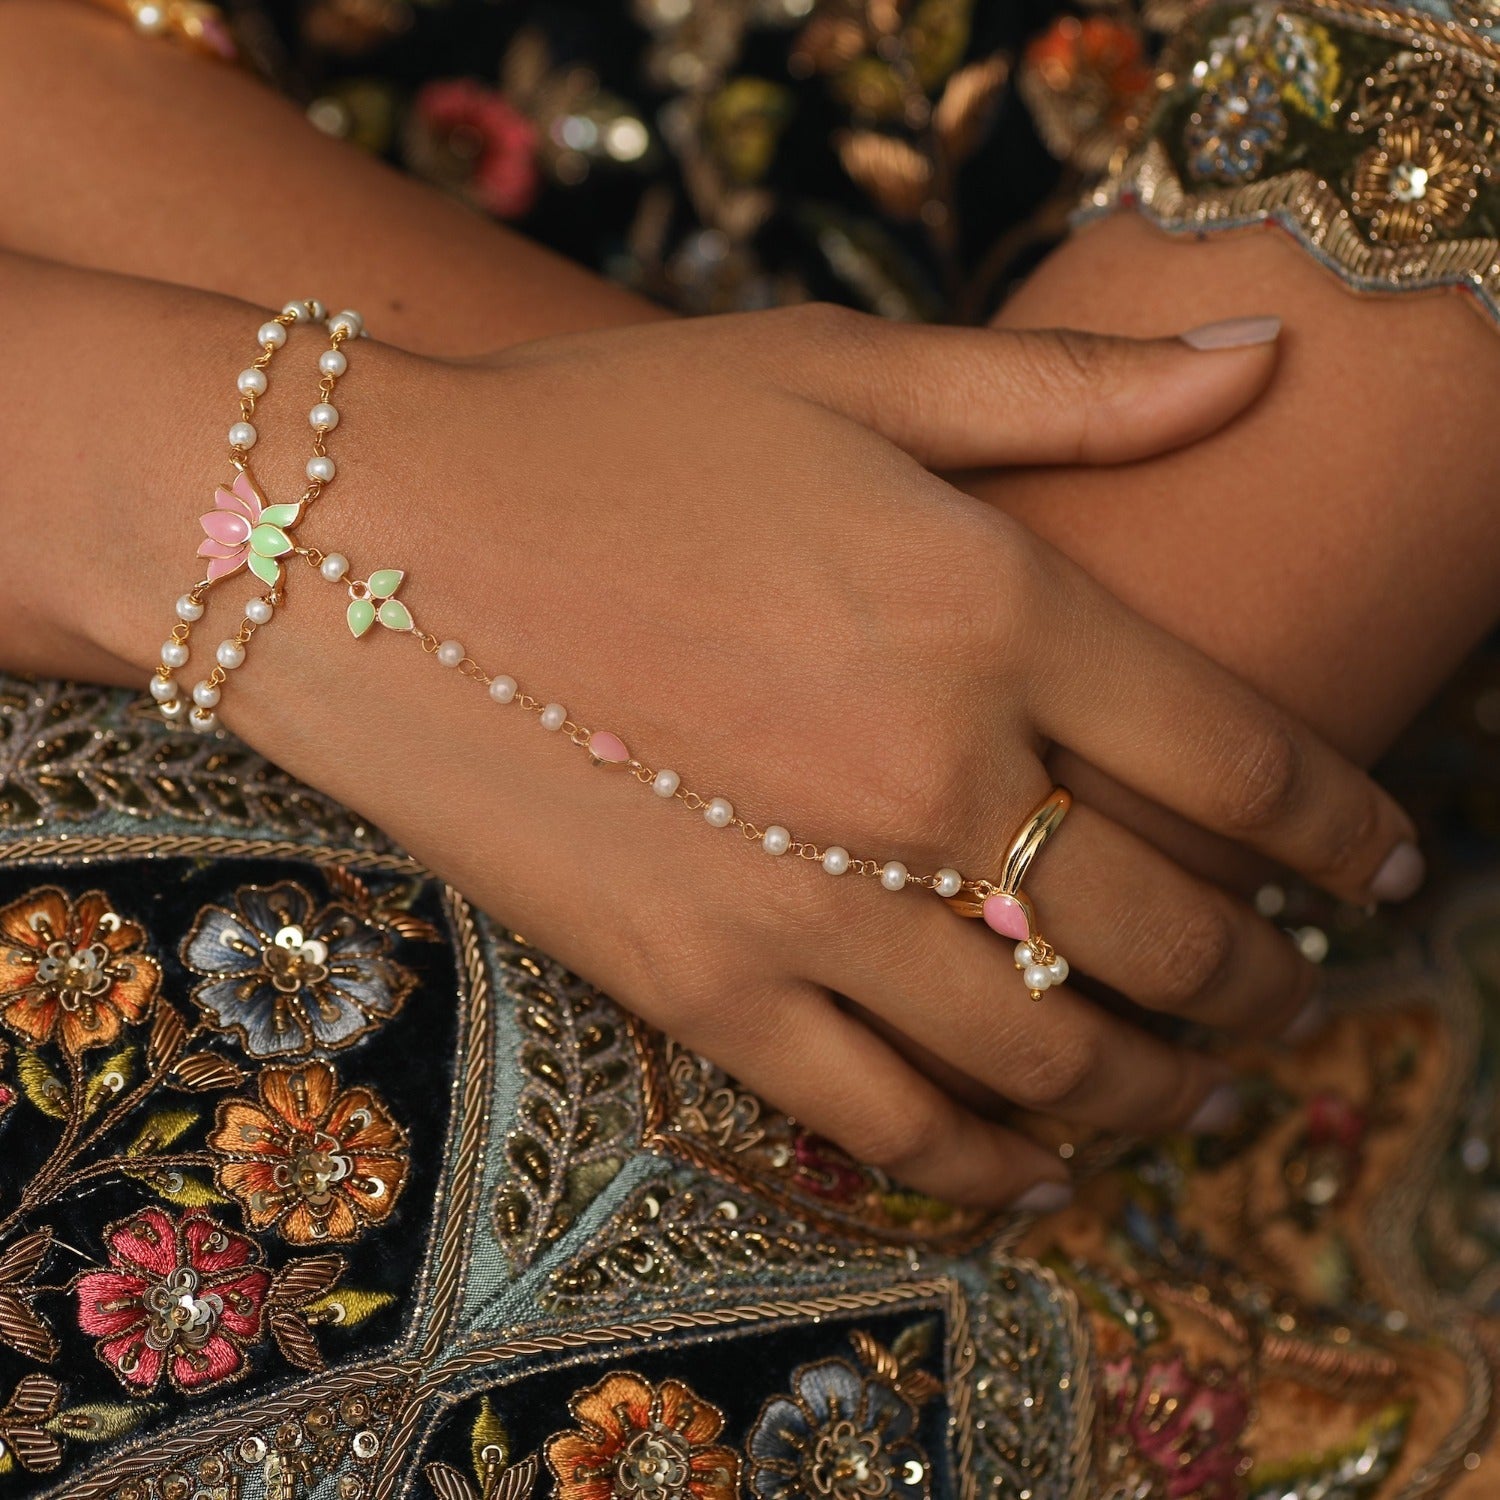 Kezlin Metal Ring Bracelet Price in India - Buy Kezlin Metal Ring Bracelet  Online at Best Prices in India | Flipkart.com